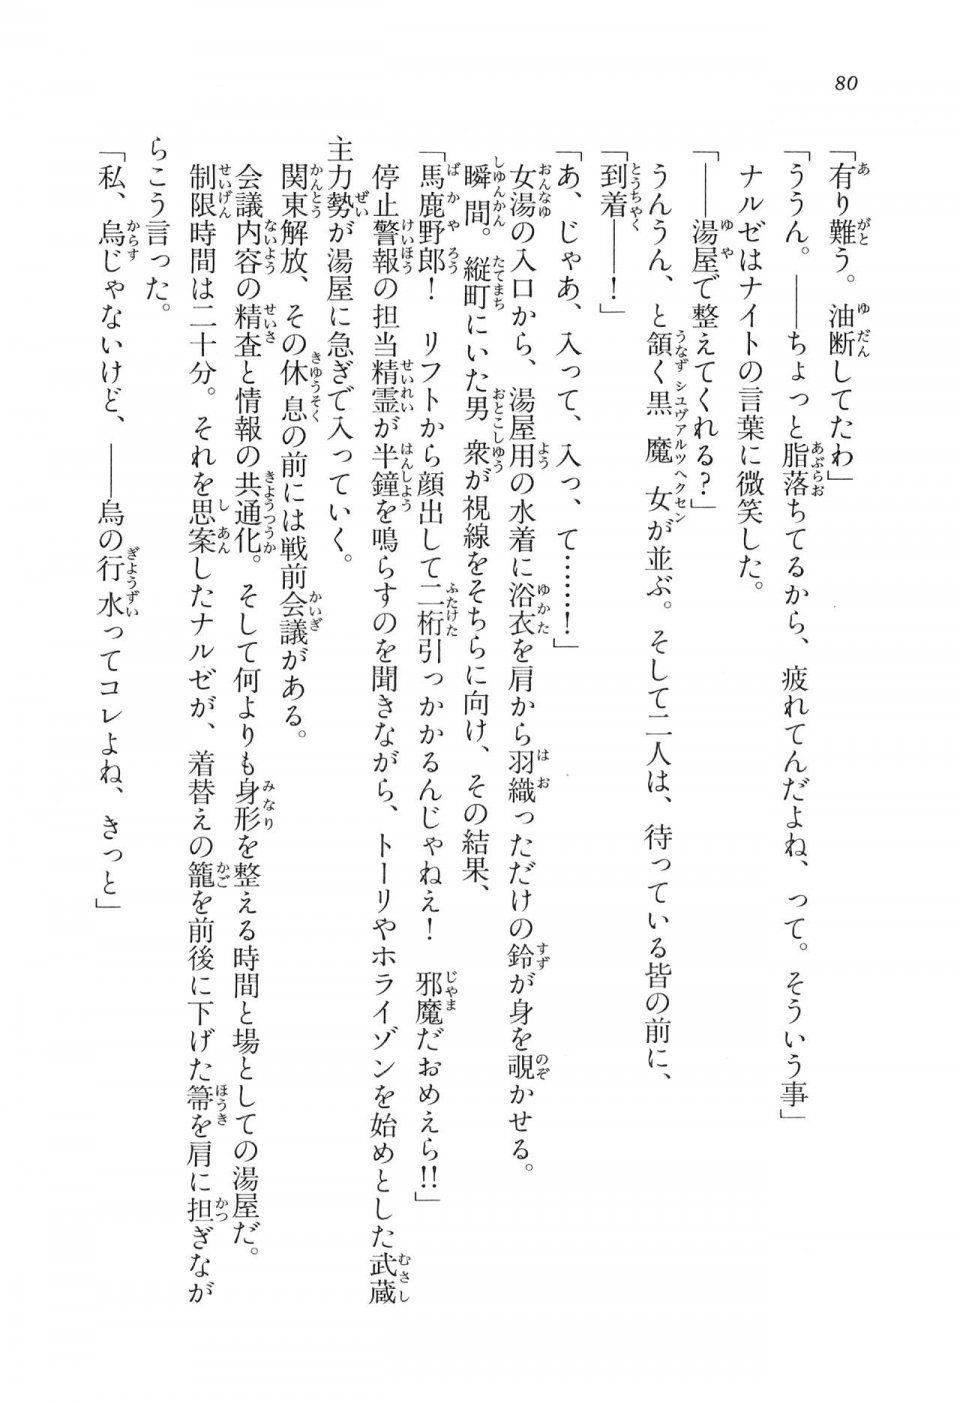 Kyoukai Senjou no Horizon LN Vol 16(7A) - Photo #80